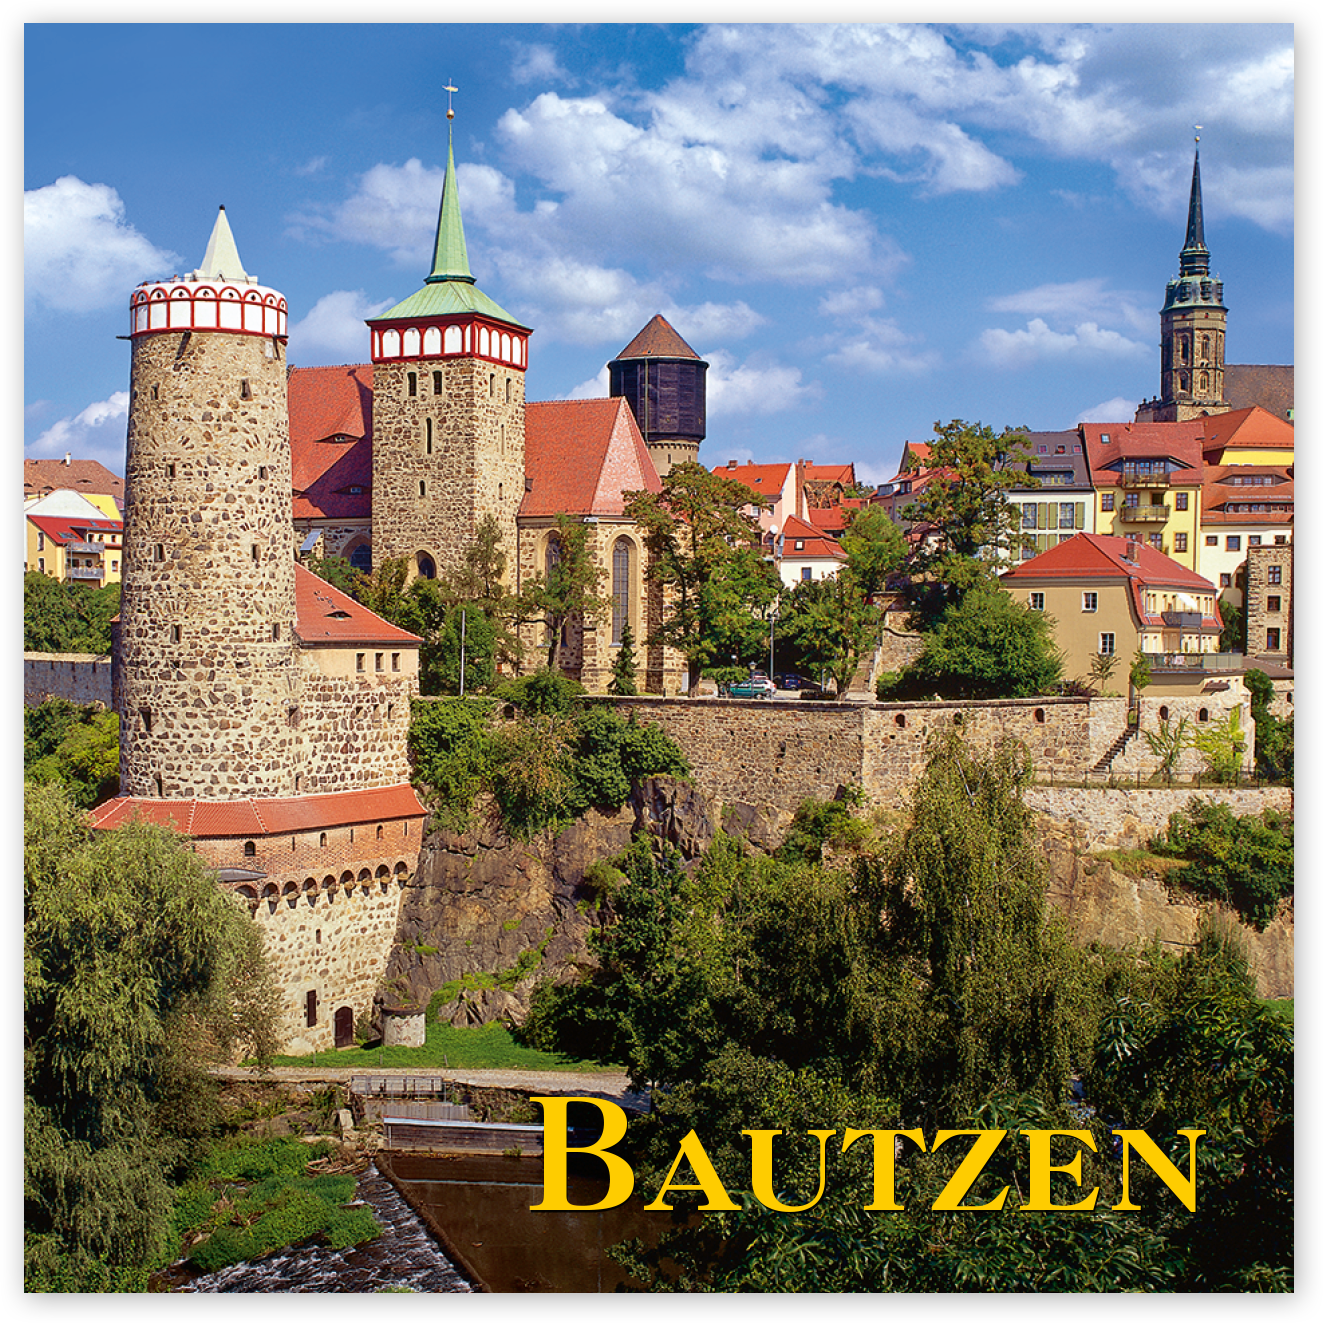 Magnet Bautzen – Die Bautzner Altstadt